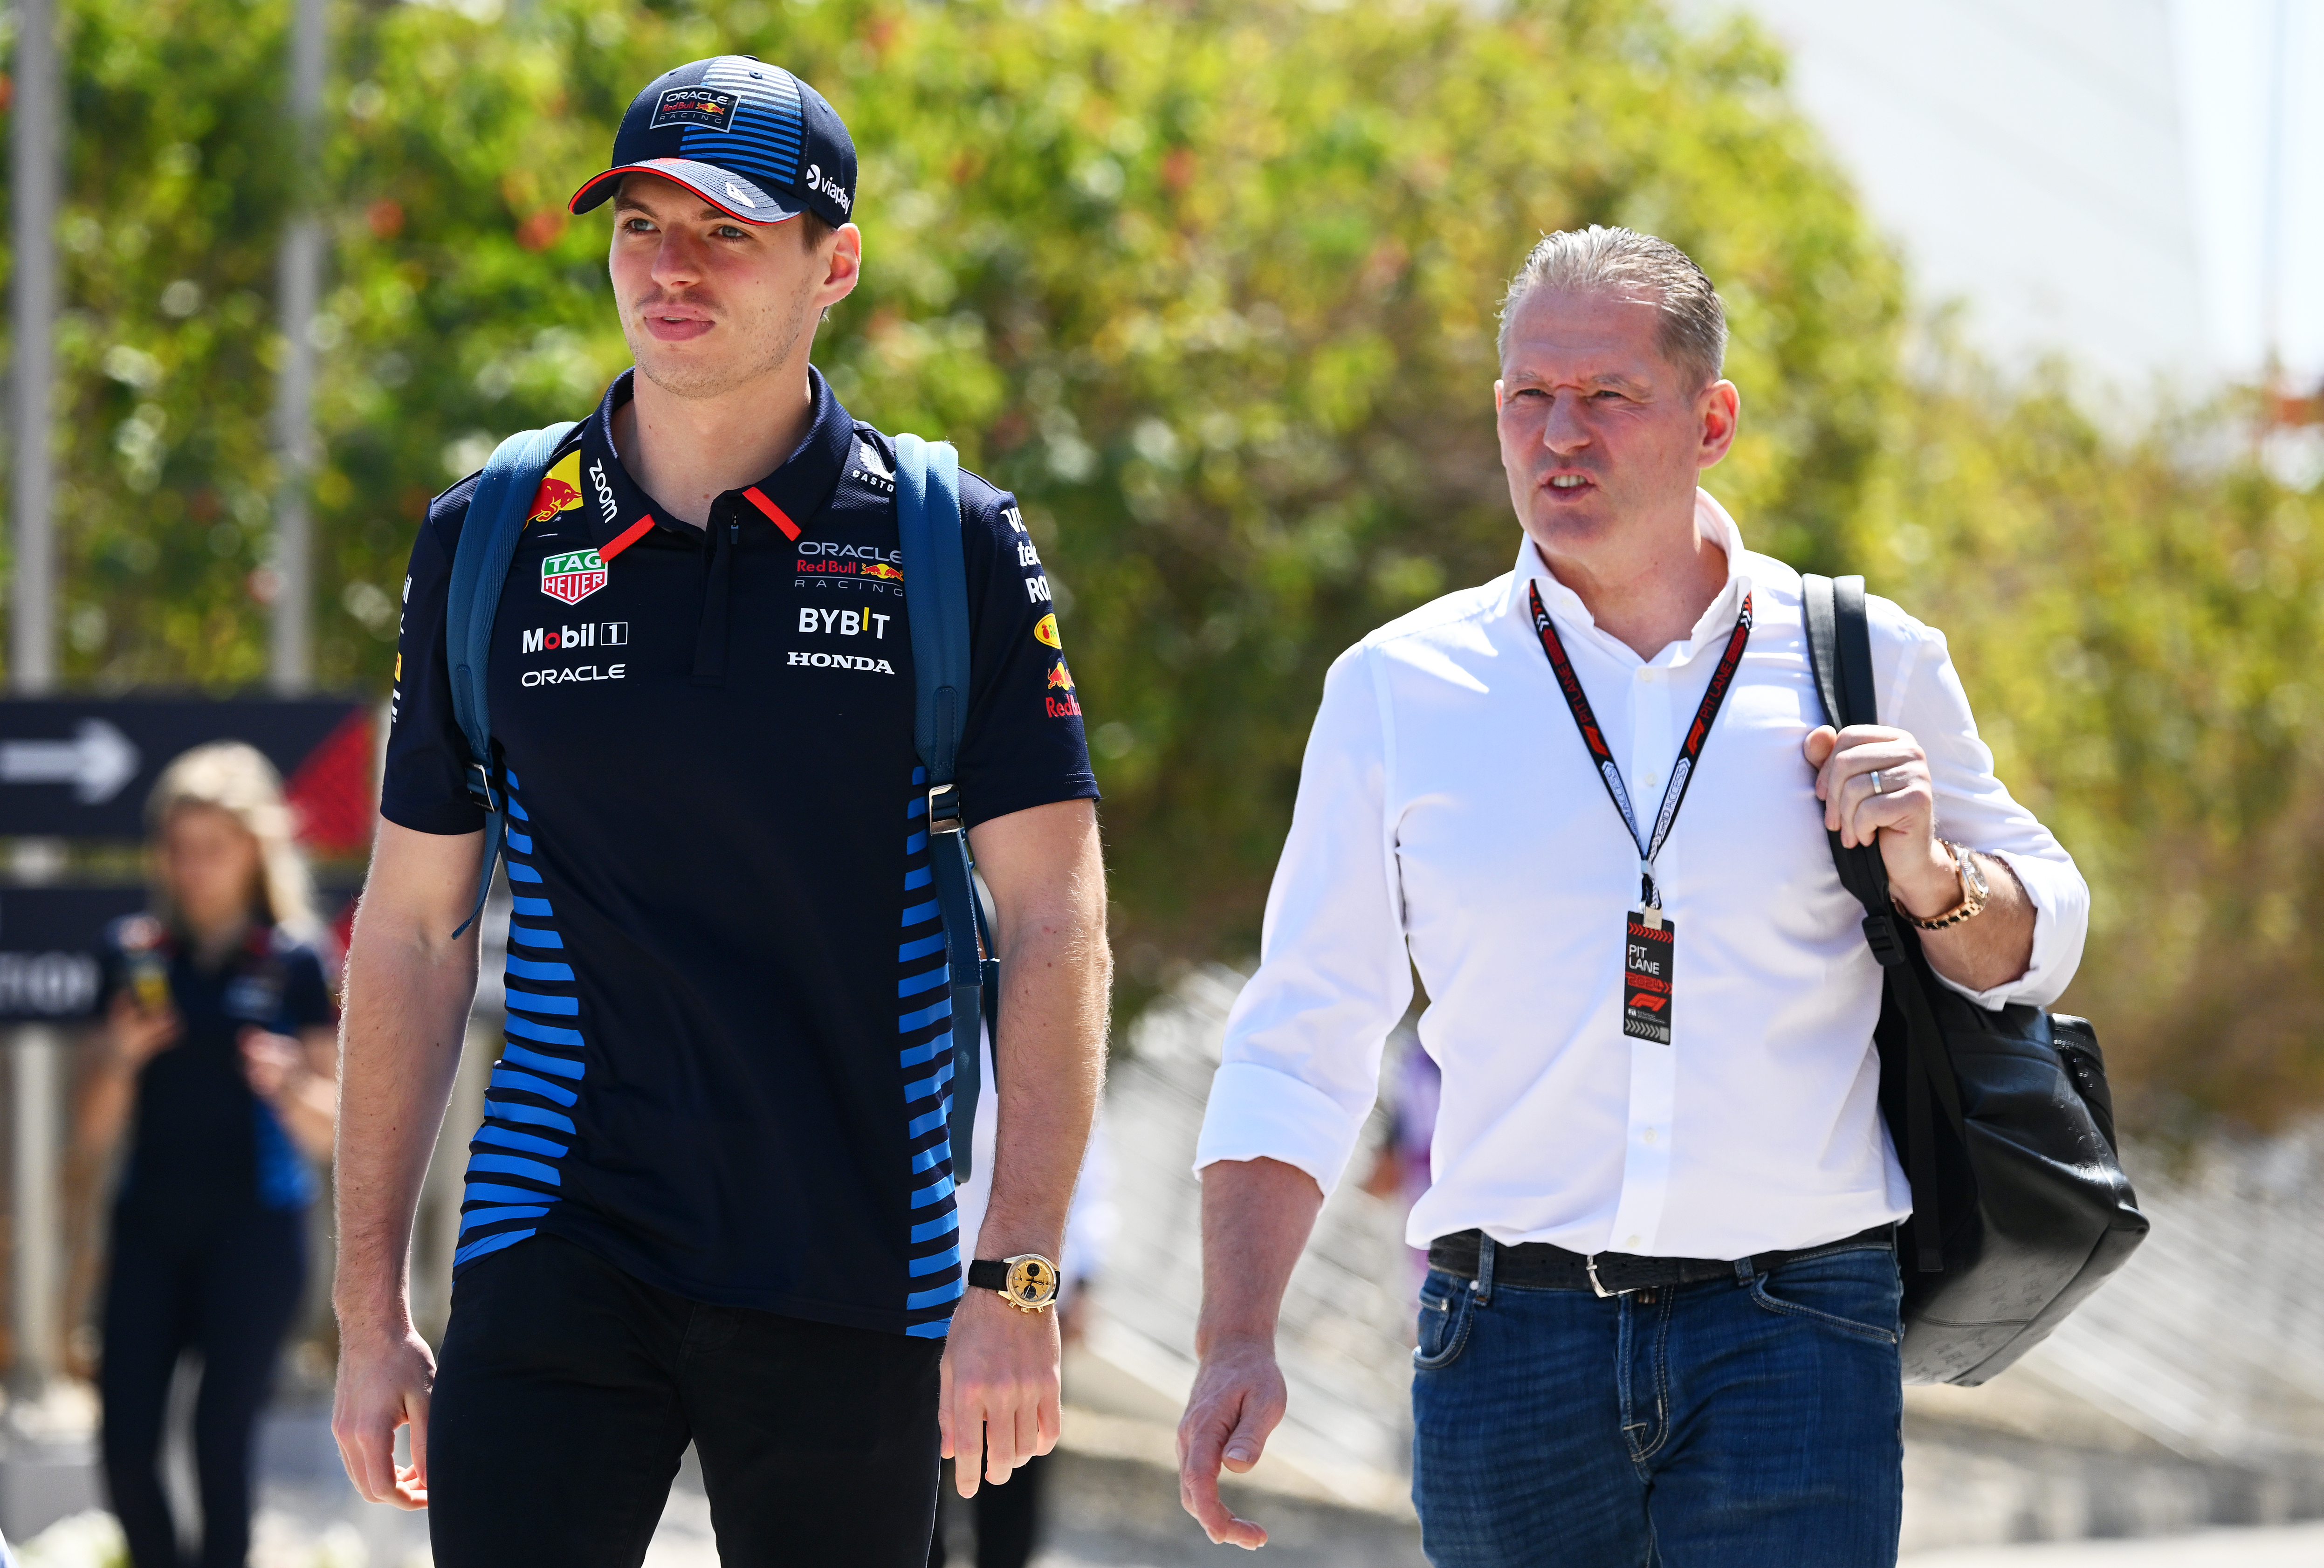 Nachdem sein Sohn an diesem Wochenende den Großen Preis von Bahrain gewonnen hatte, deutete Verstappens Senior an, dass „Opfer“ Horner zurücktreten sollte